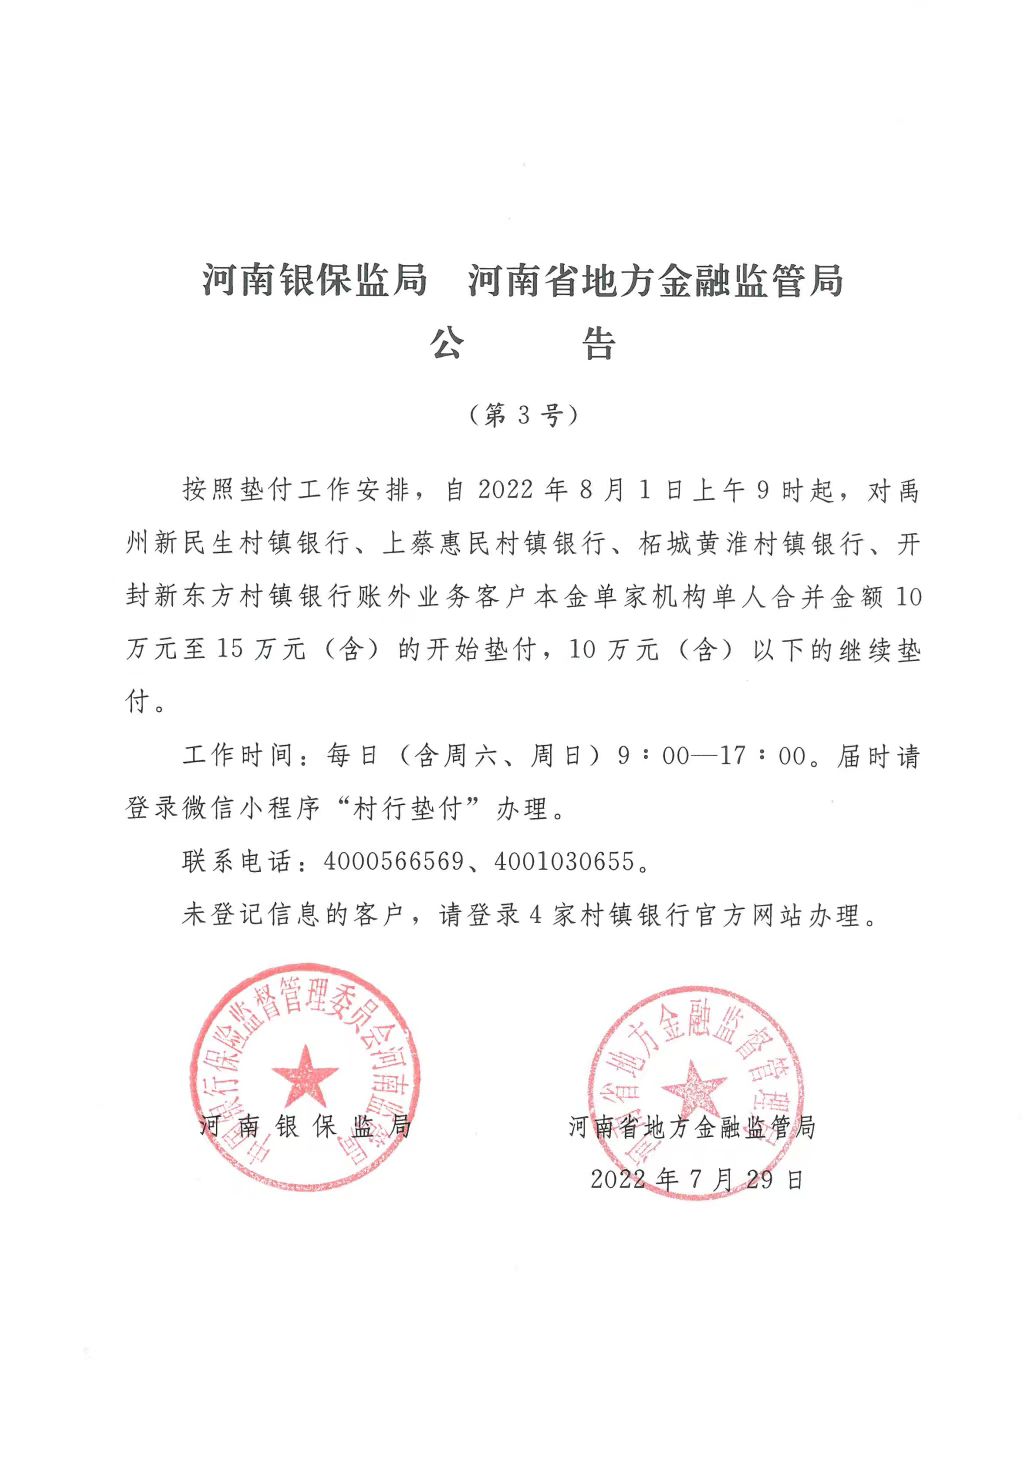 河南安徽村镇银行第三批垫付将于8月1日初阶